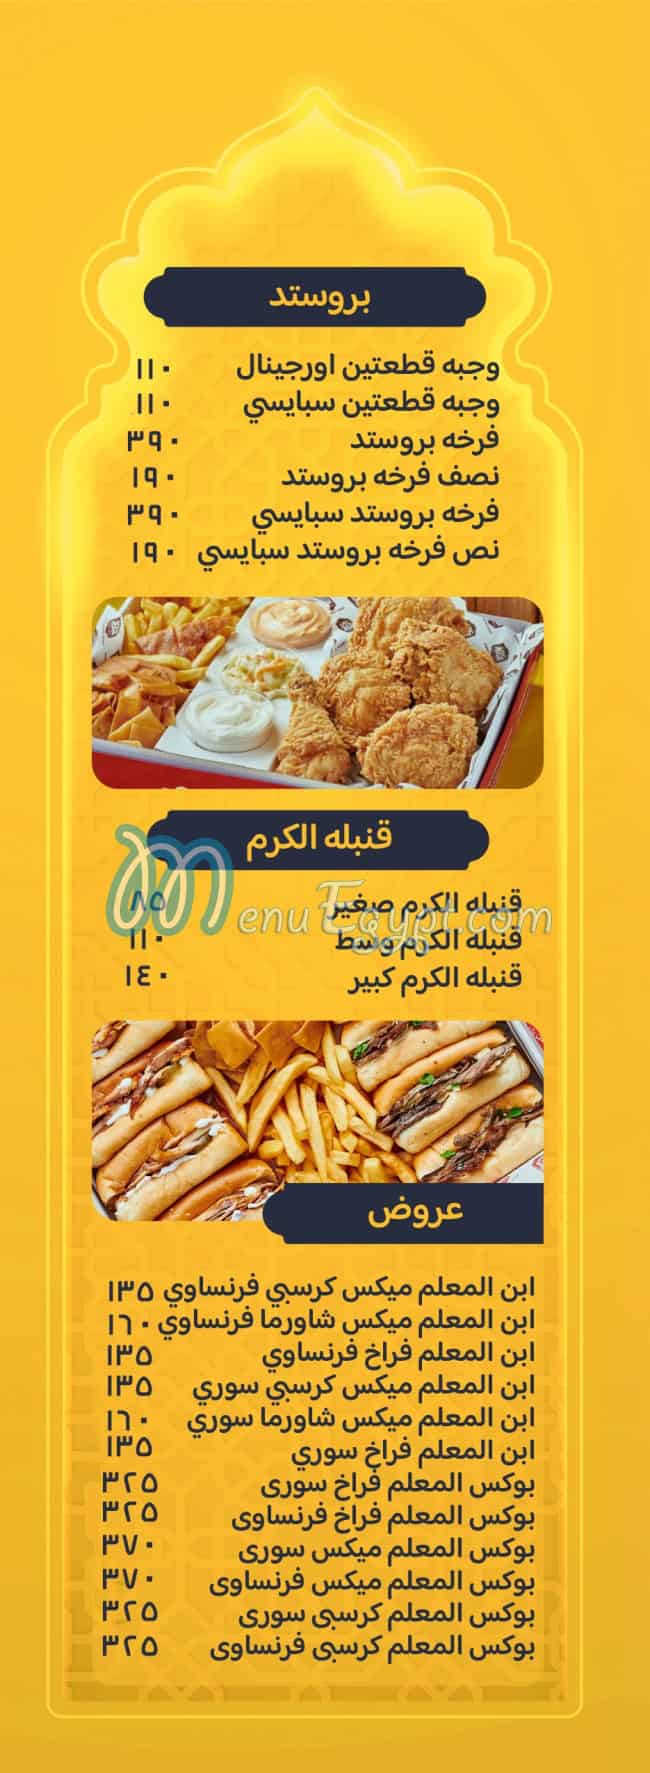 Karam El Sham menu Egypt